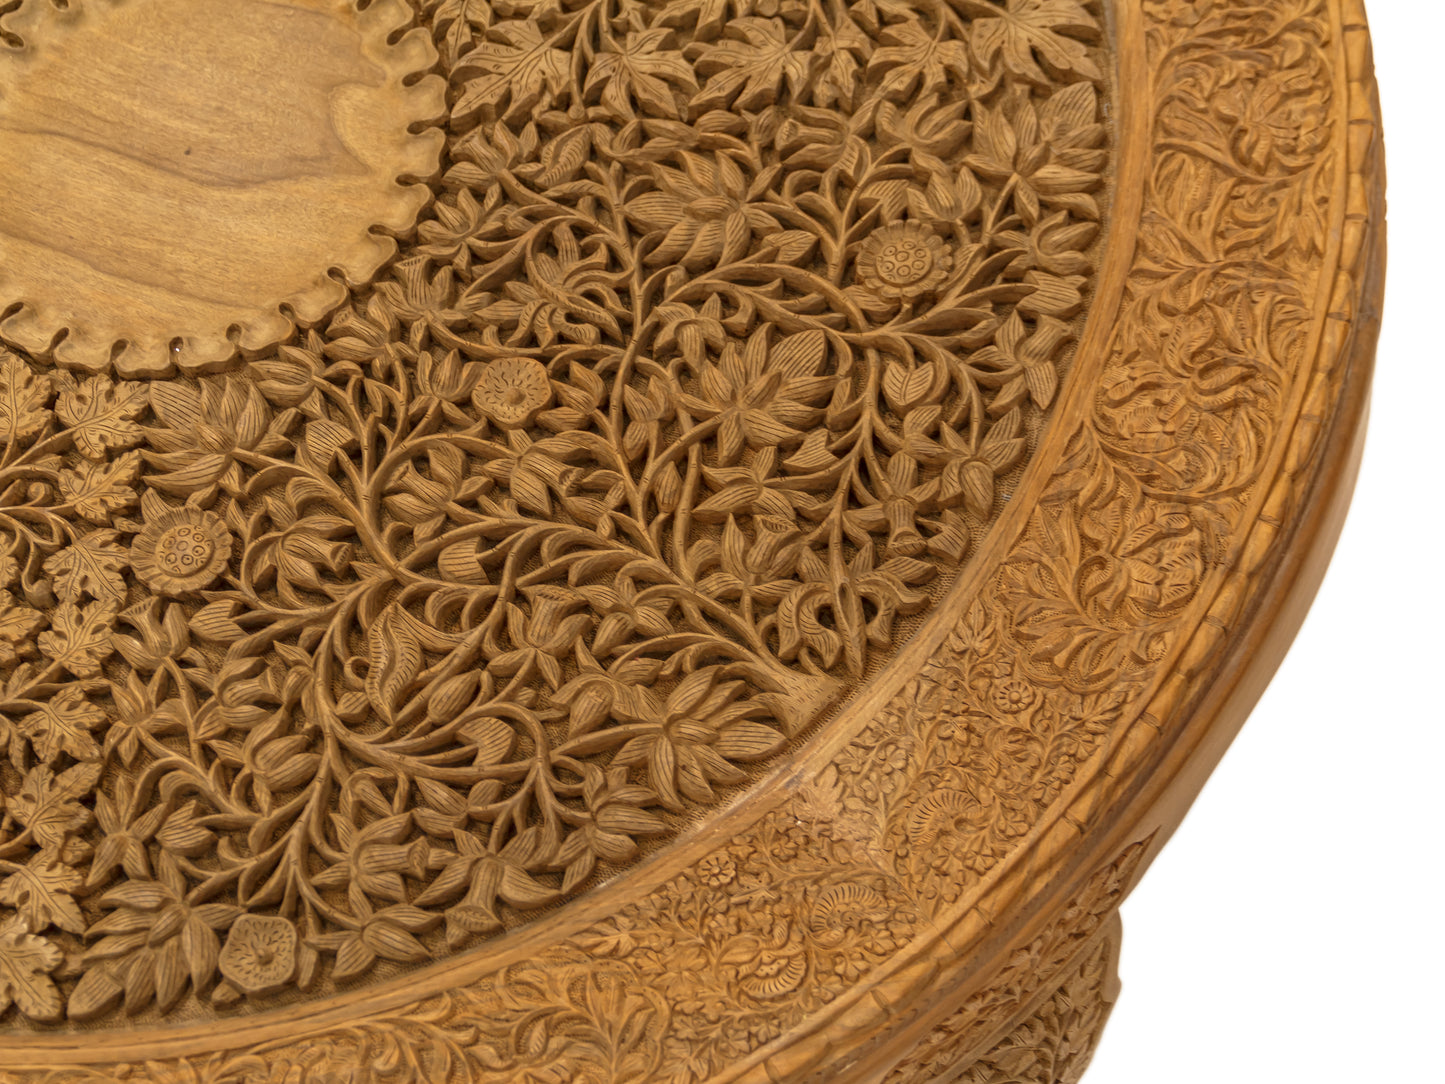 Handmade Walnut Table "4 seasons" product image #29720065179818